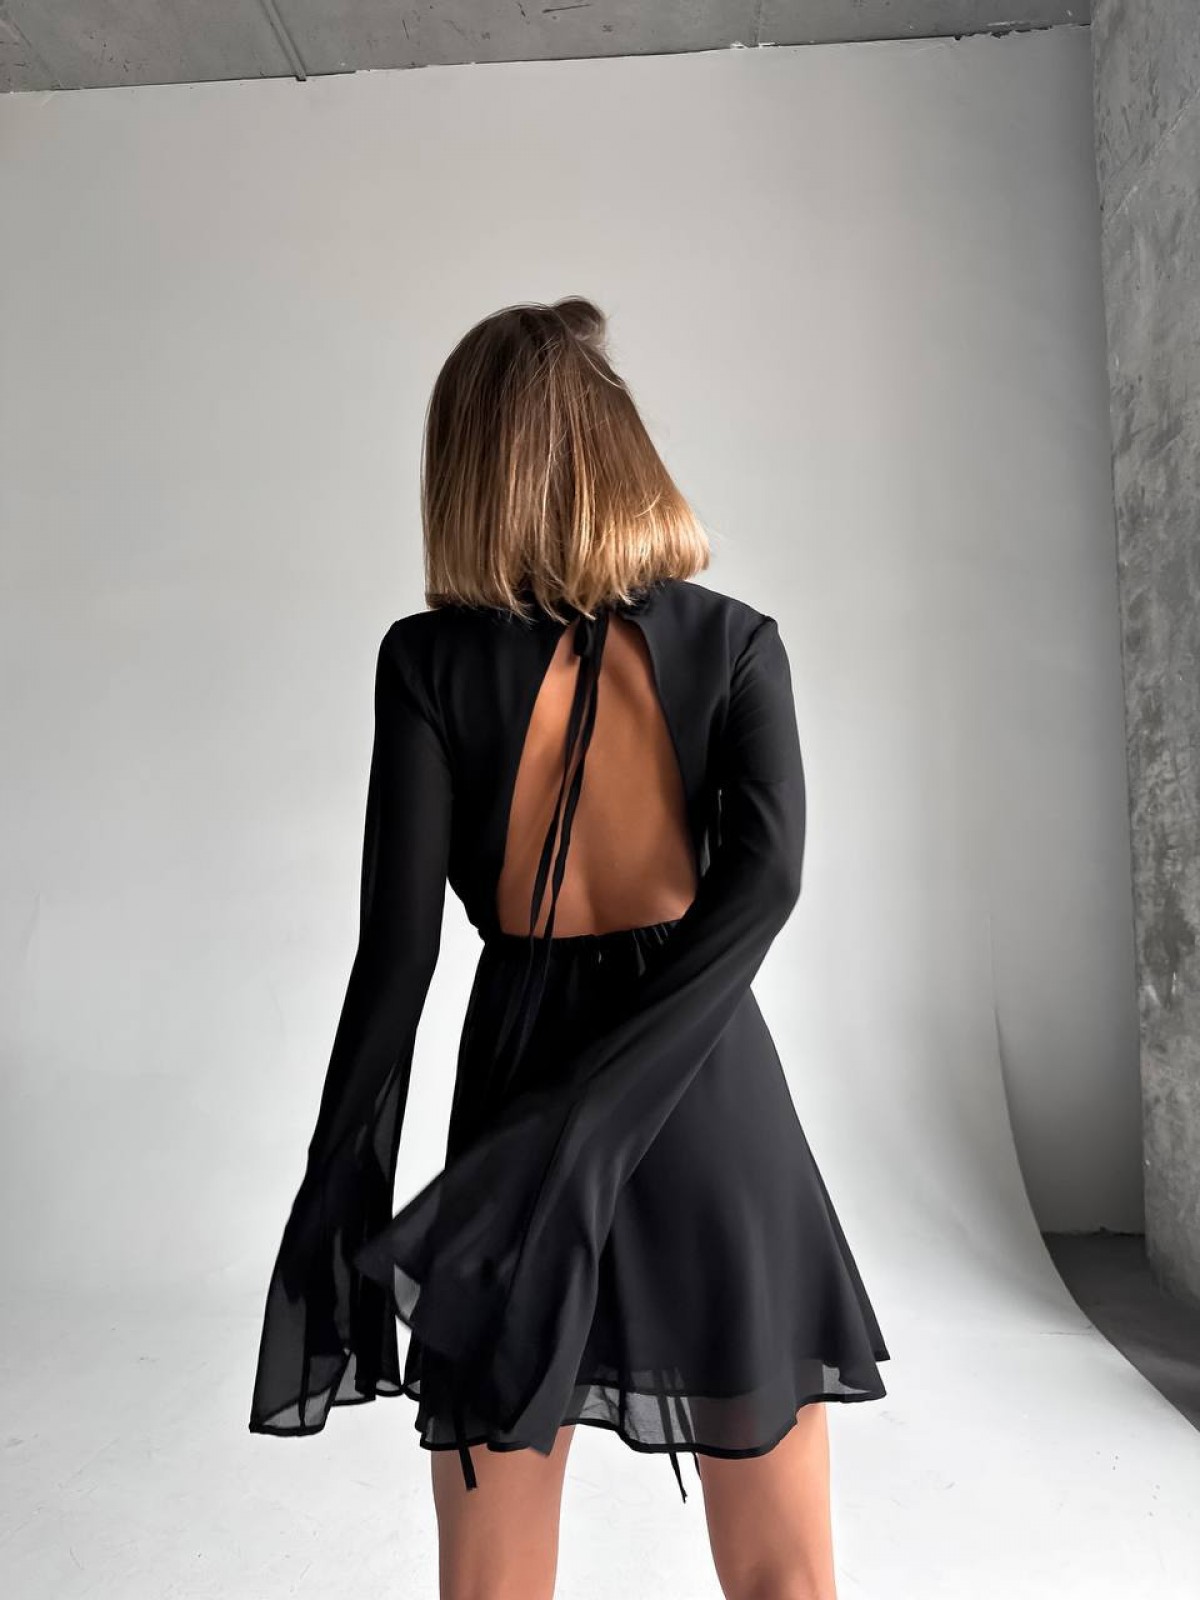 Жіноча сукня із креп шифону колір чорний р.42/44 446695